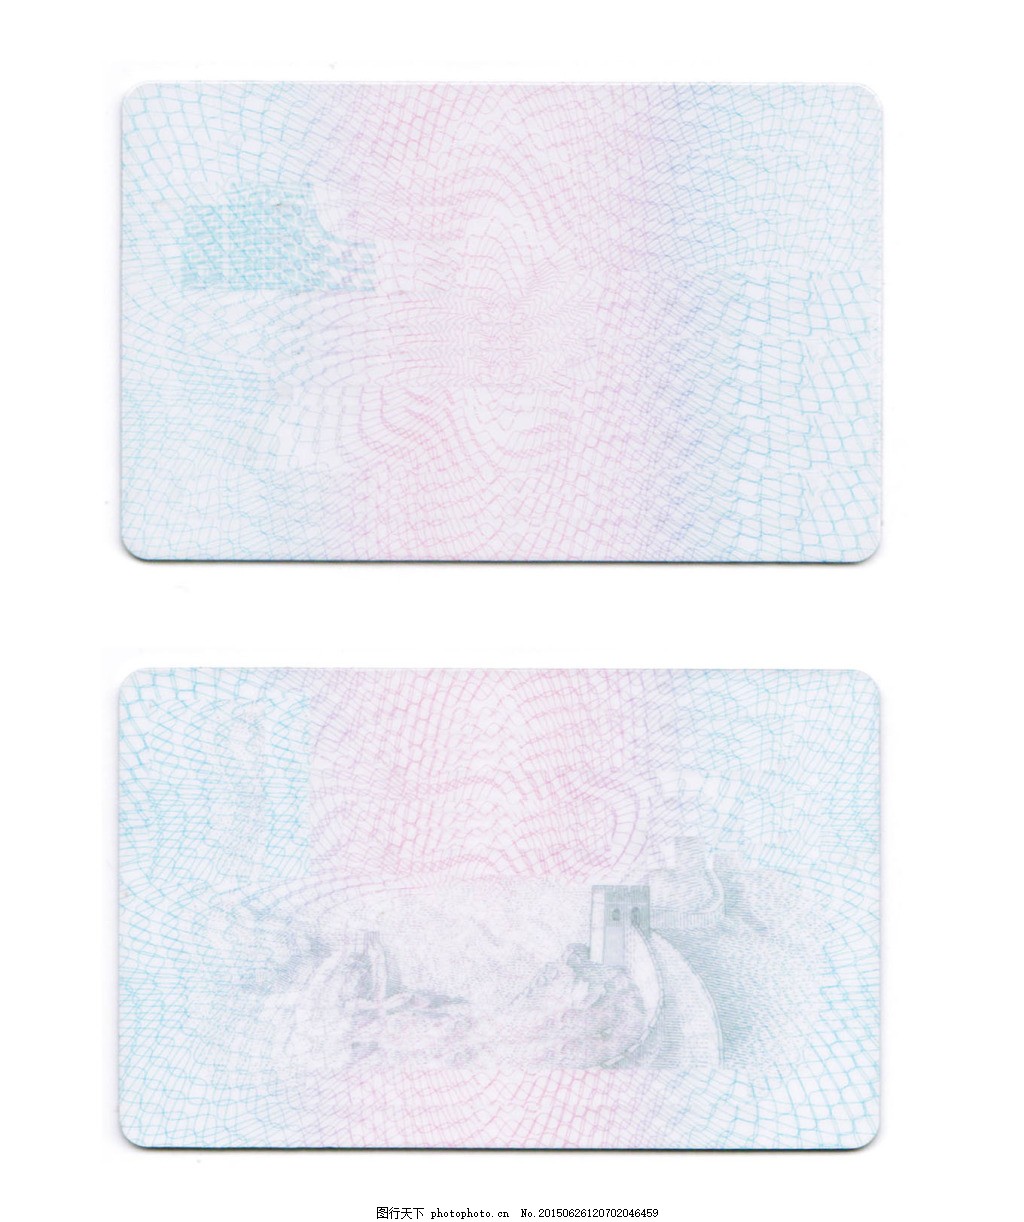 身份证照片查询系统_身份证照片查询_身份证查询系统-飞虎图片分享